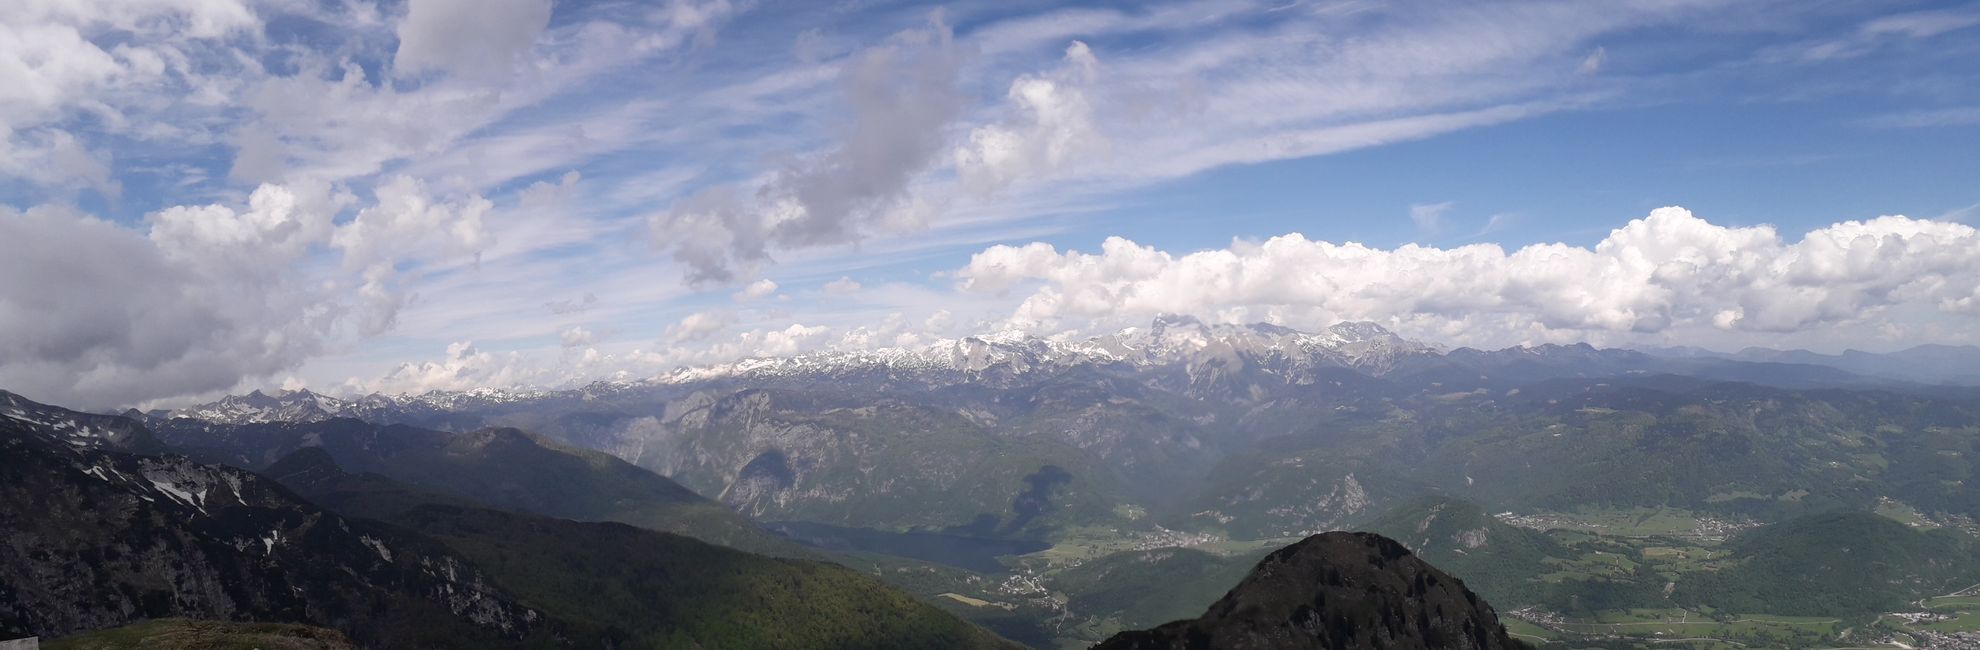 aussicht auf den Triglav, sloweniens höchster Berg mit fast 2900m!